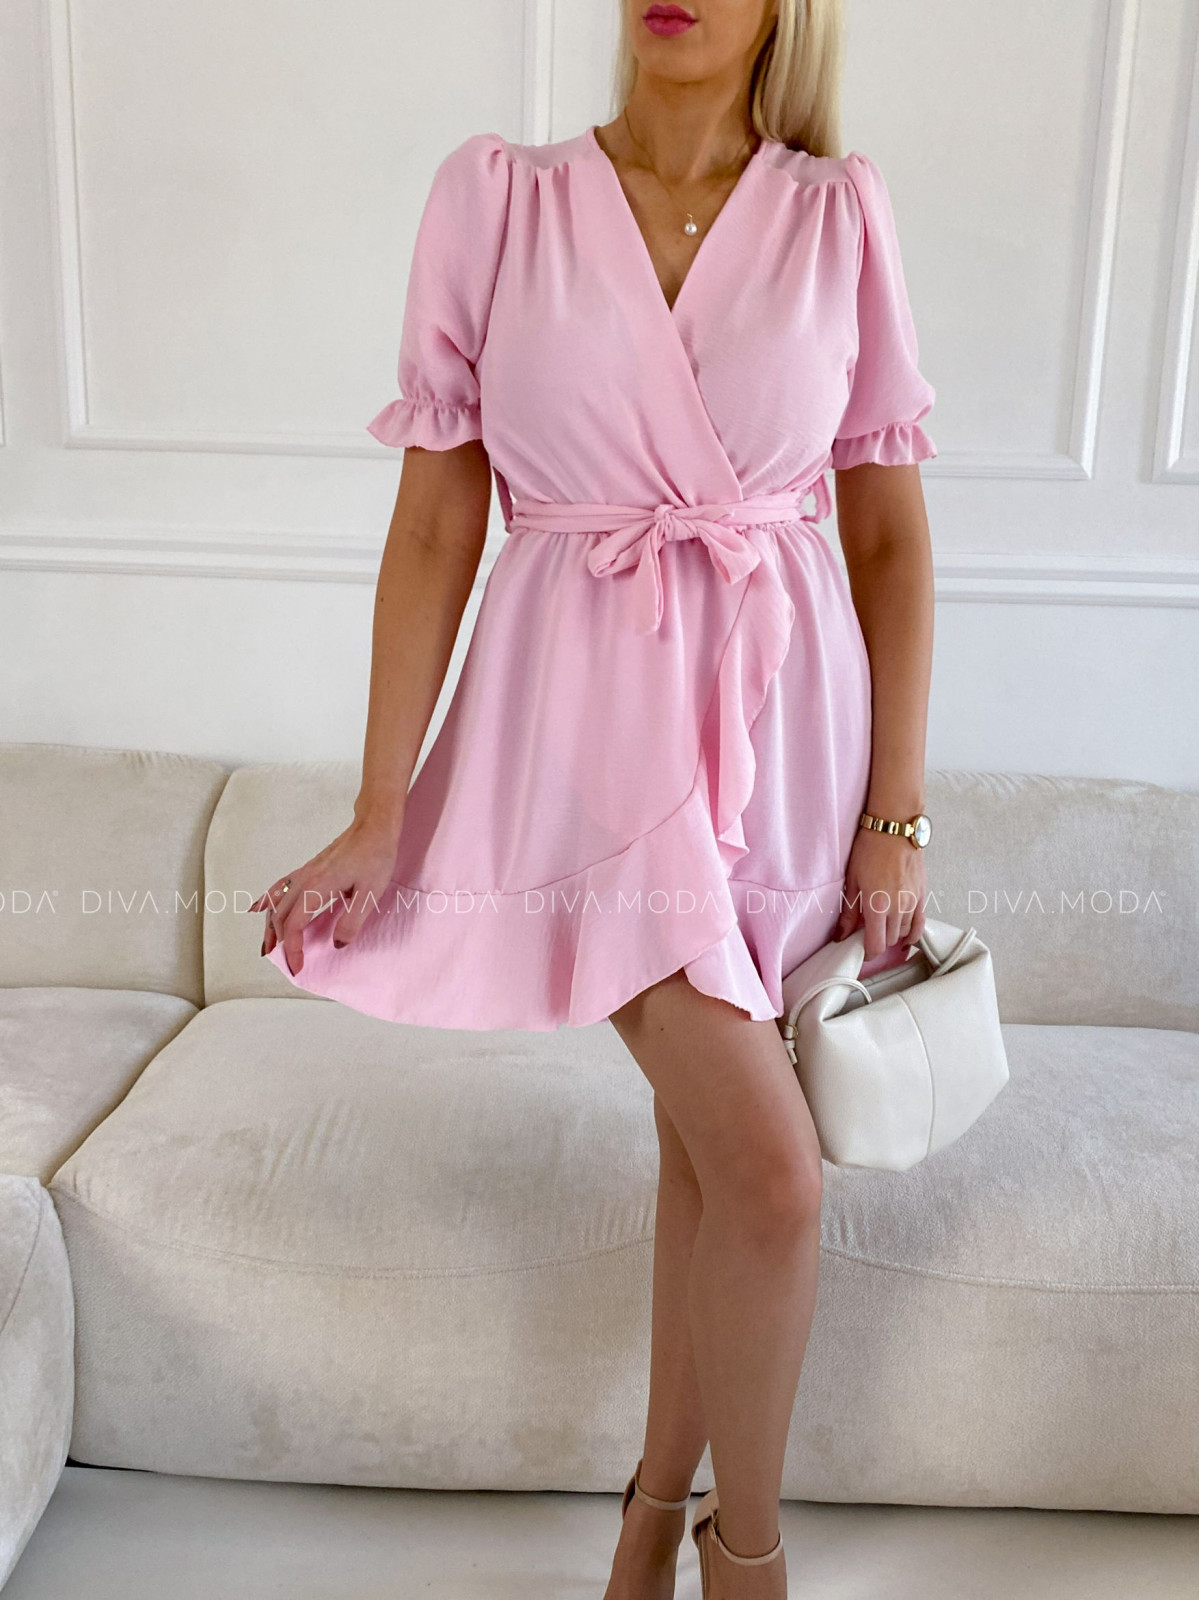 lehké šaty s volánem Roma baby pink P 54